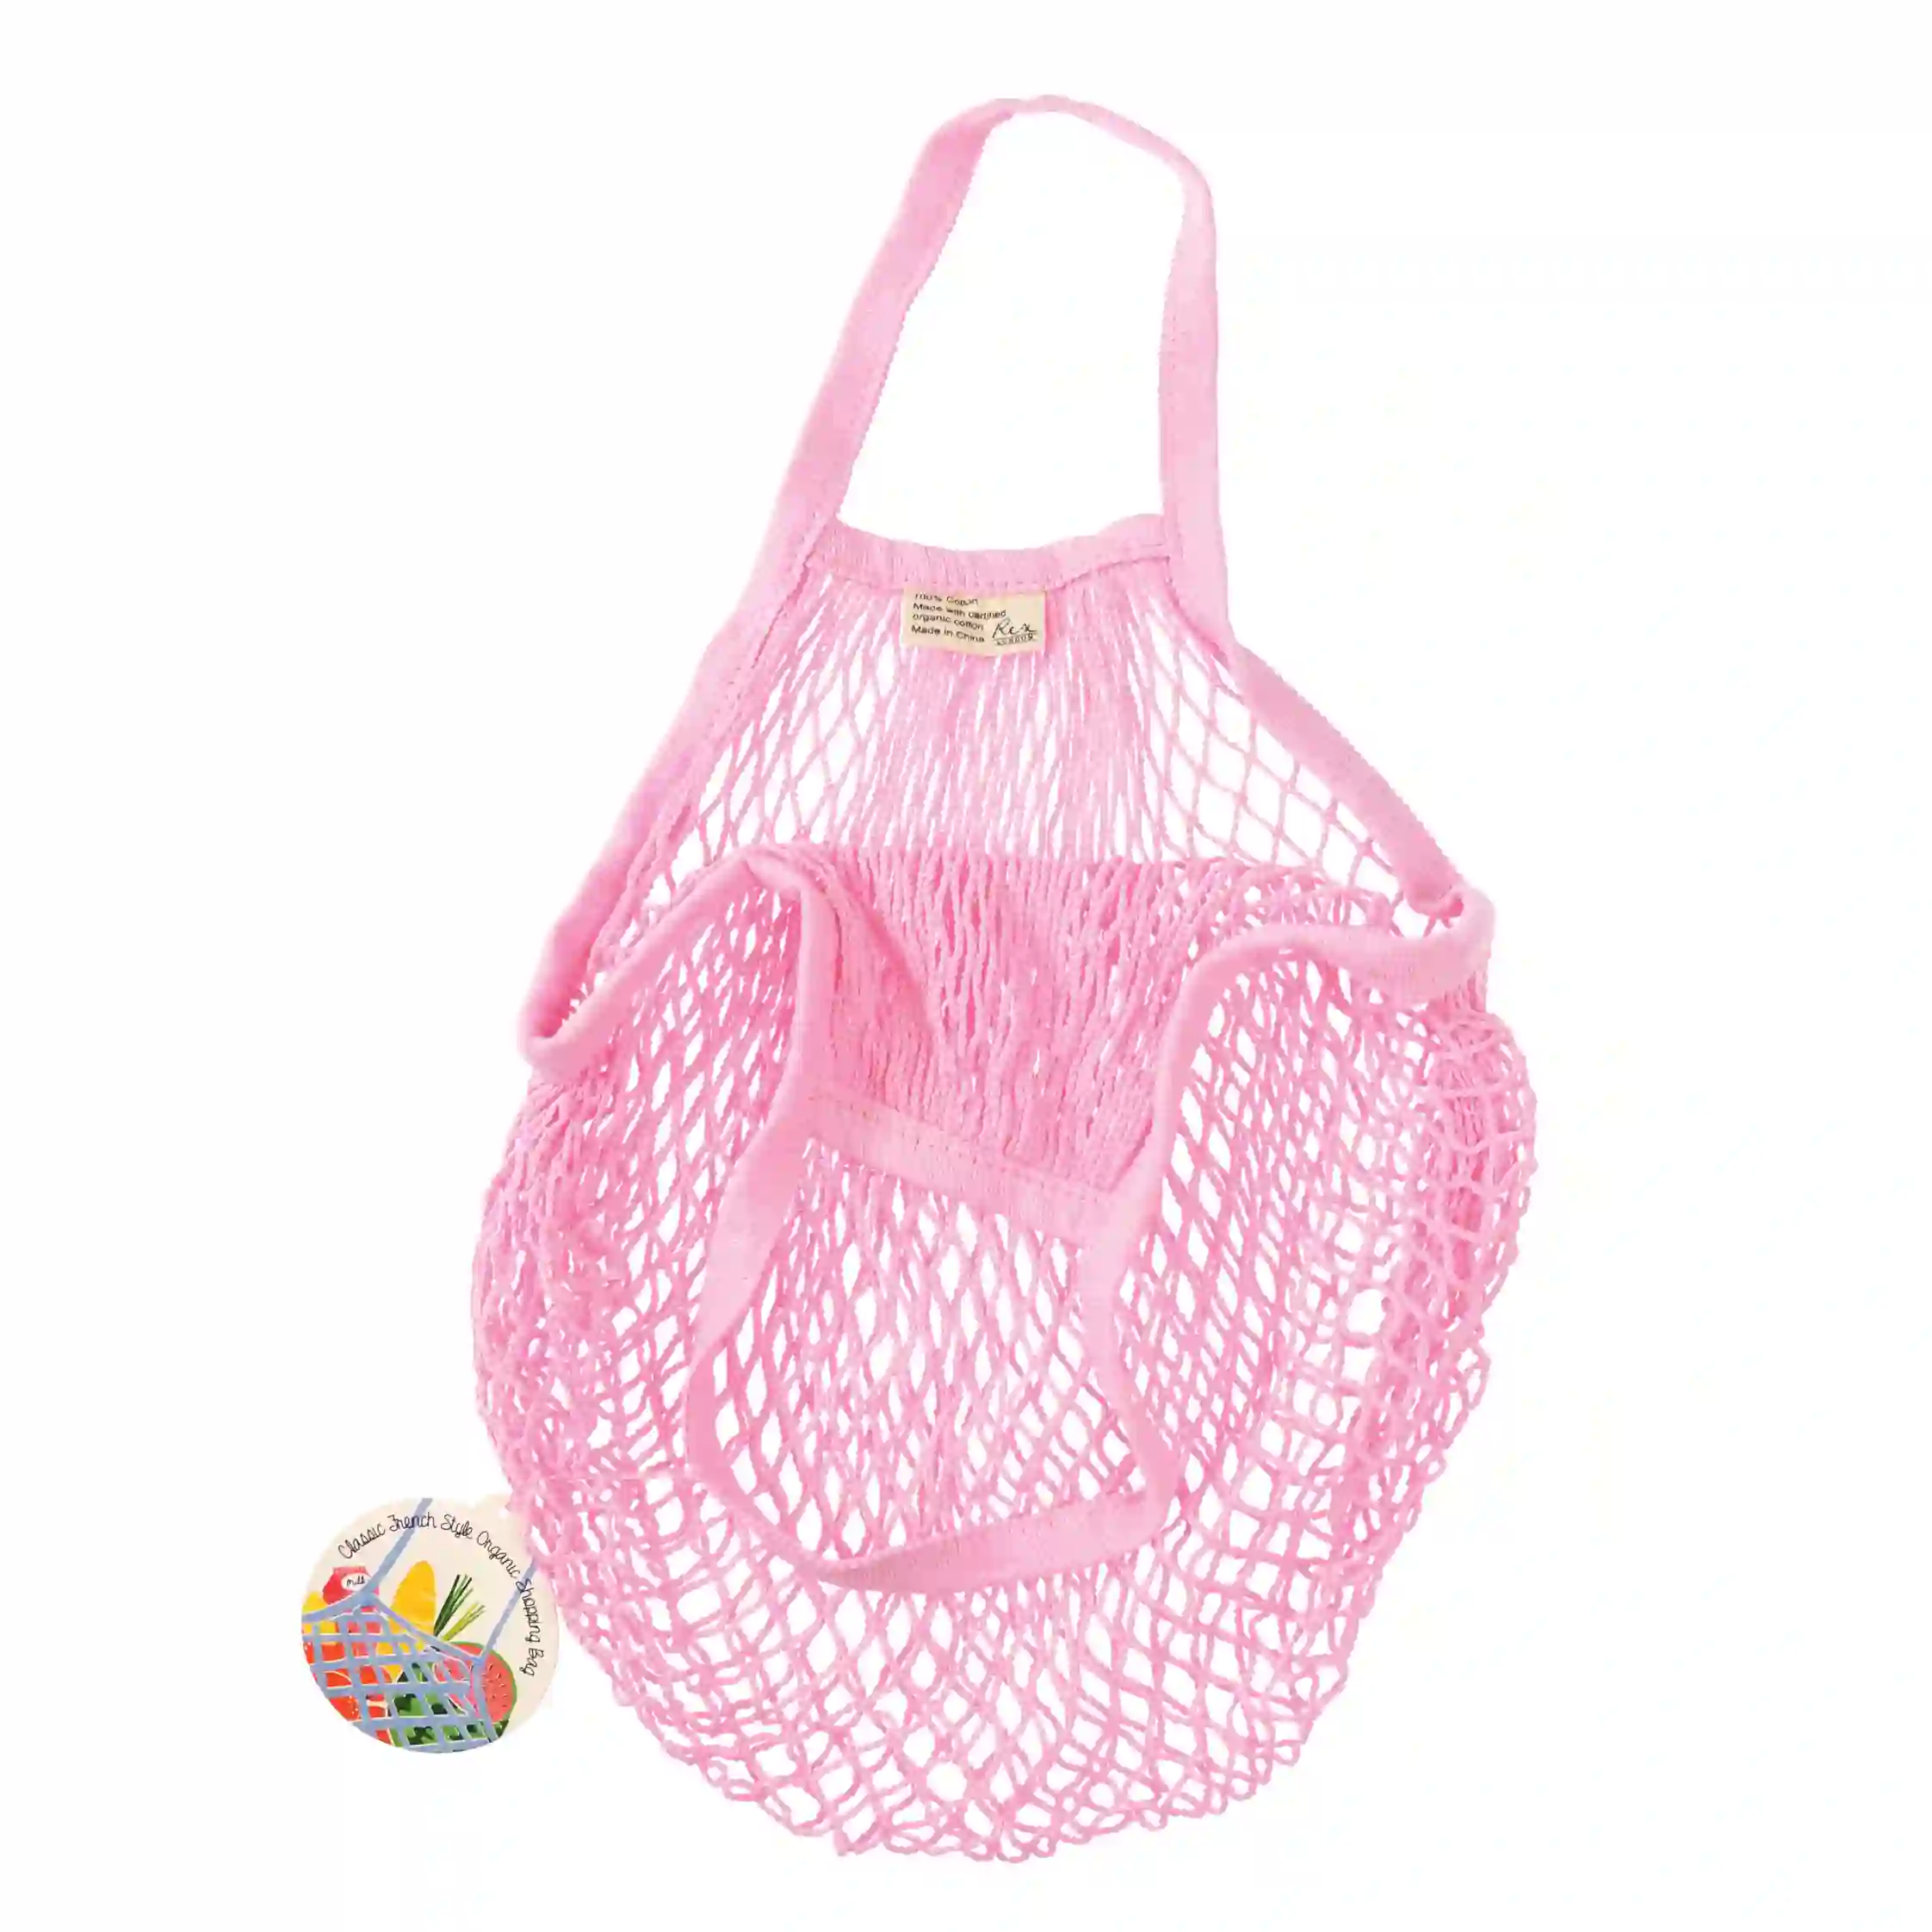 netzeinkaufstasche aus biobaumwolle in baby pink